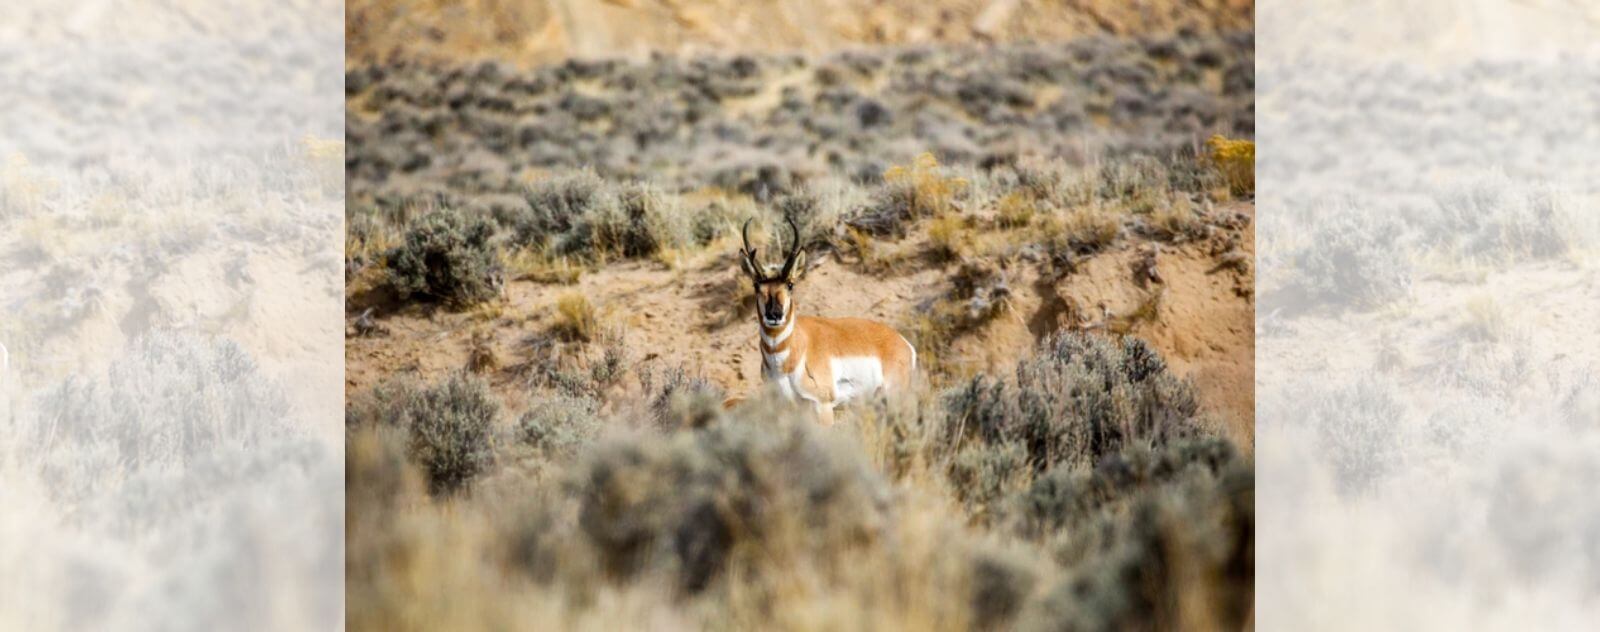 Antilope d'Amérique dans son Habitat Naturel dans les Prairies Désertiques Américaines